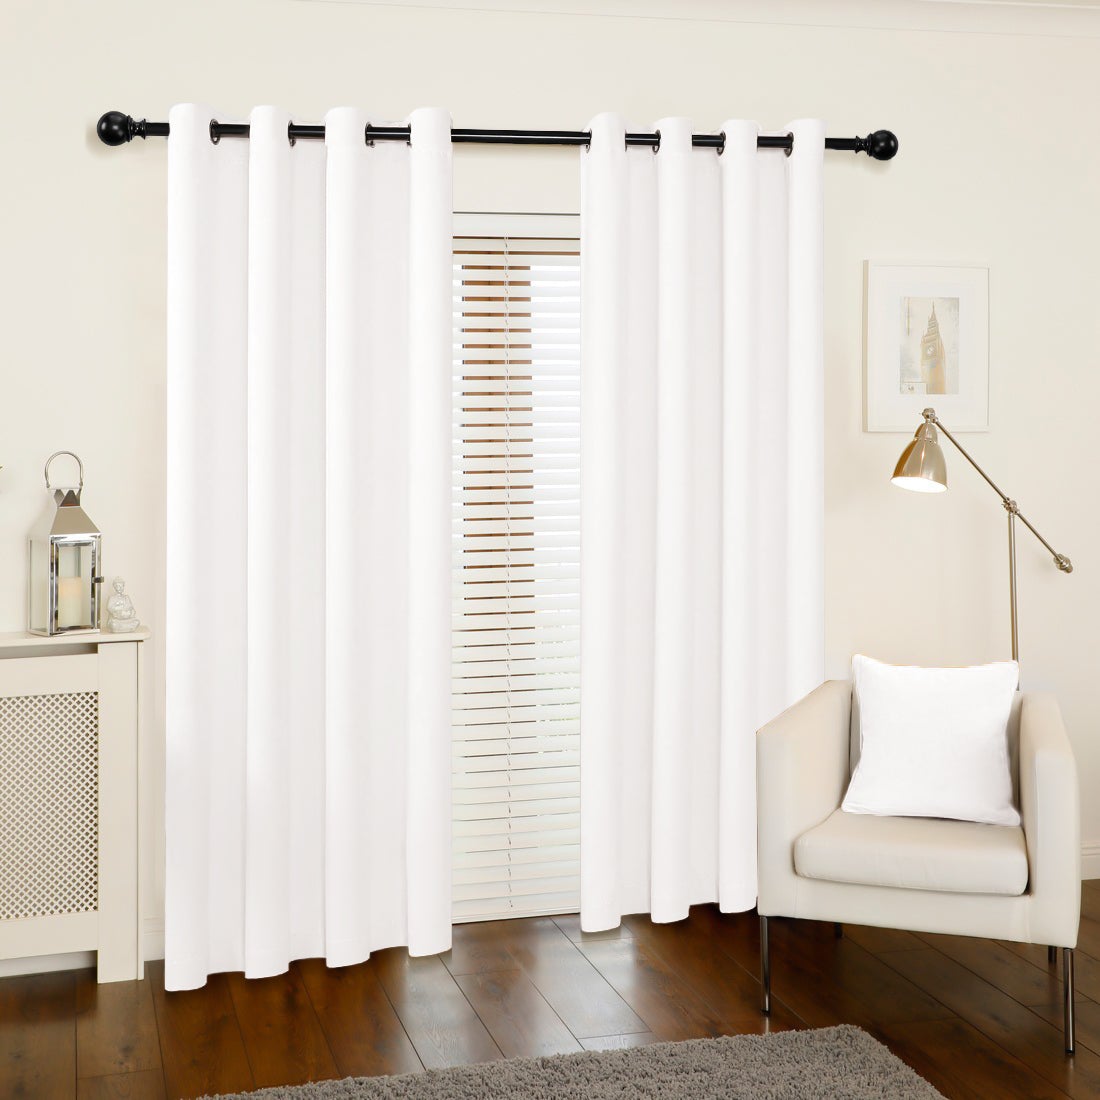 Akarise Blackout Curtains For Bedroom Living Room - 2 Panels, White